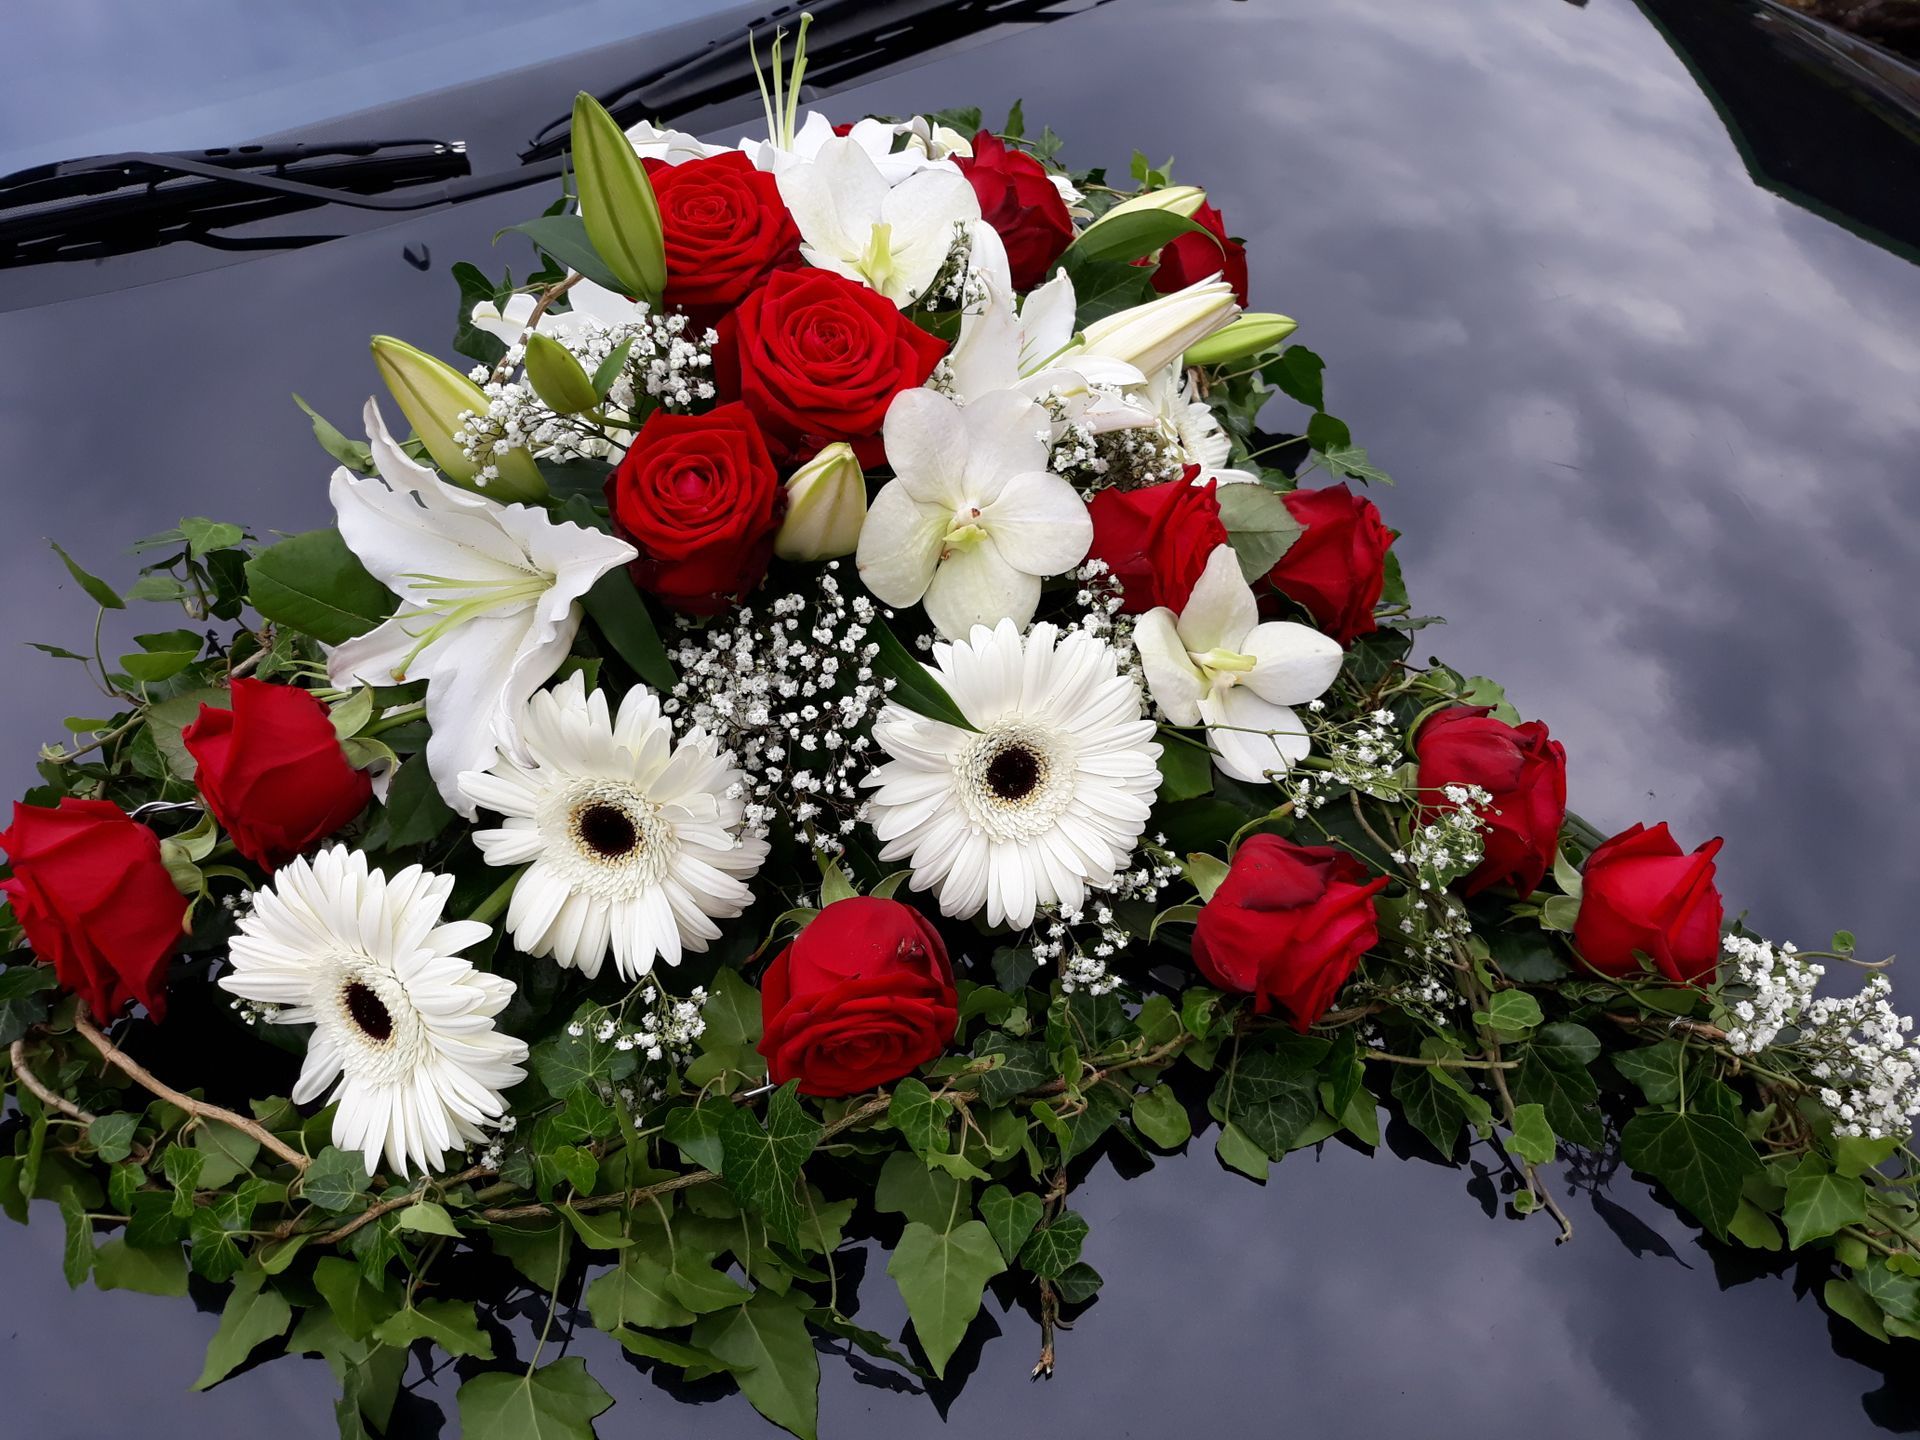 Décoration florale capot voiture